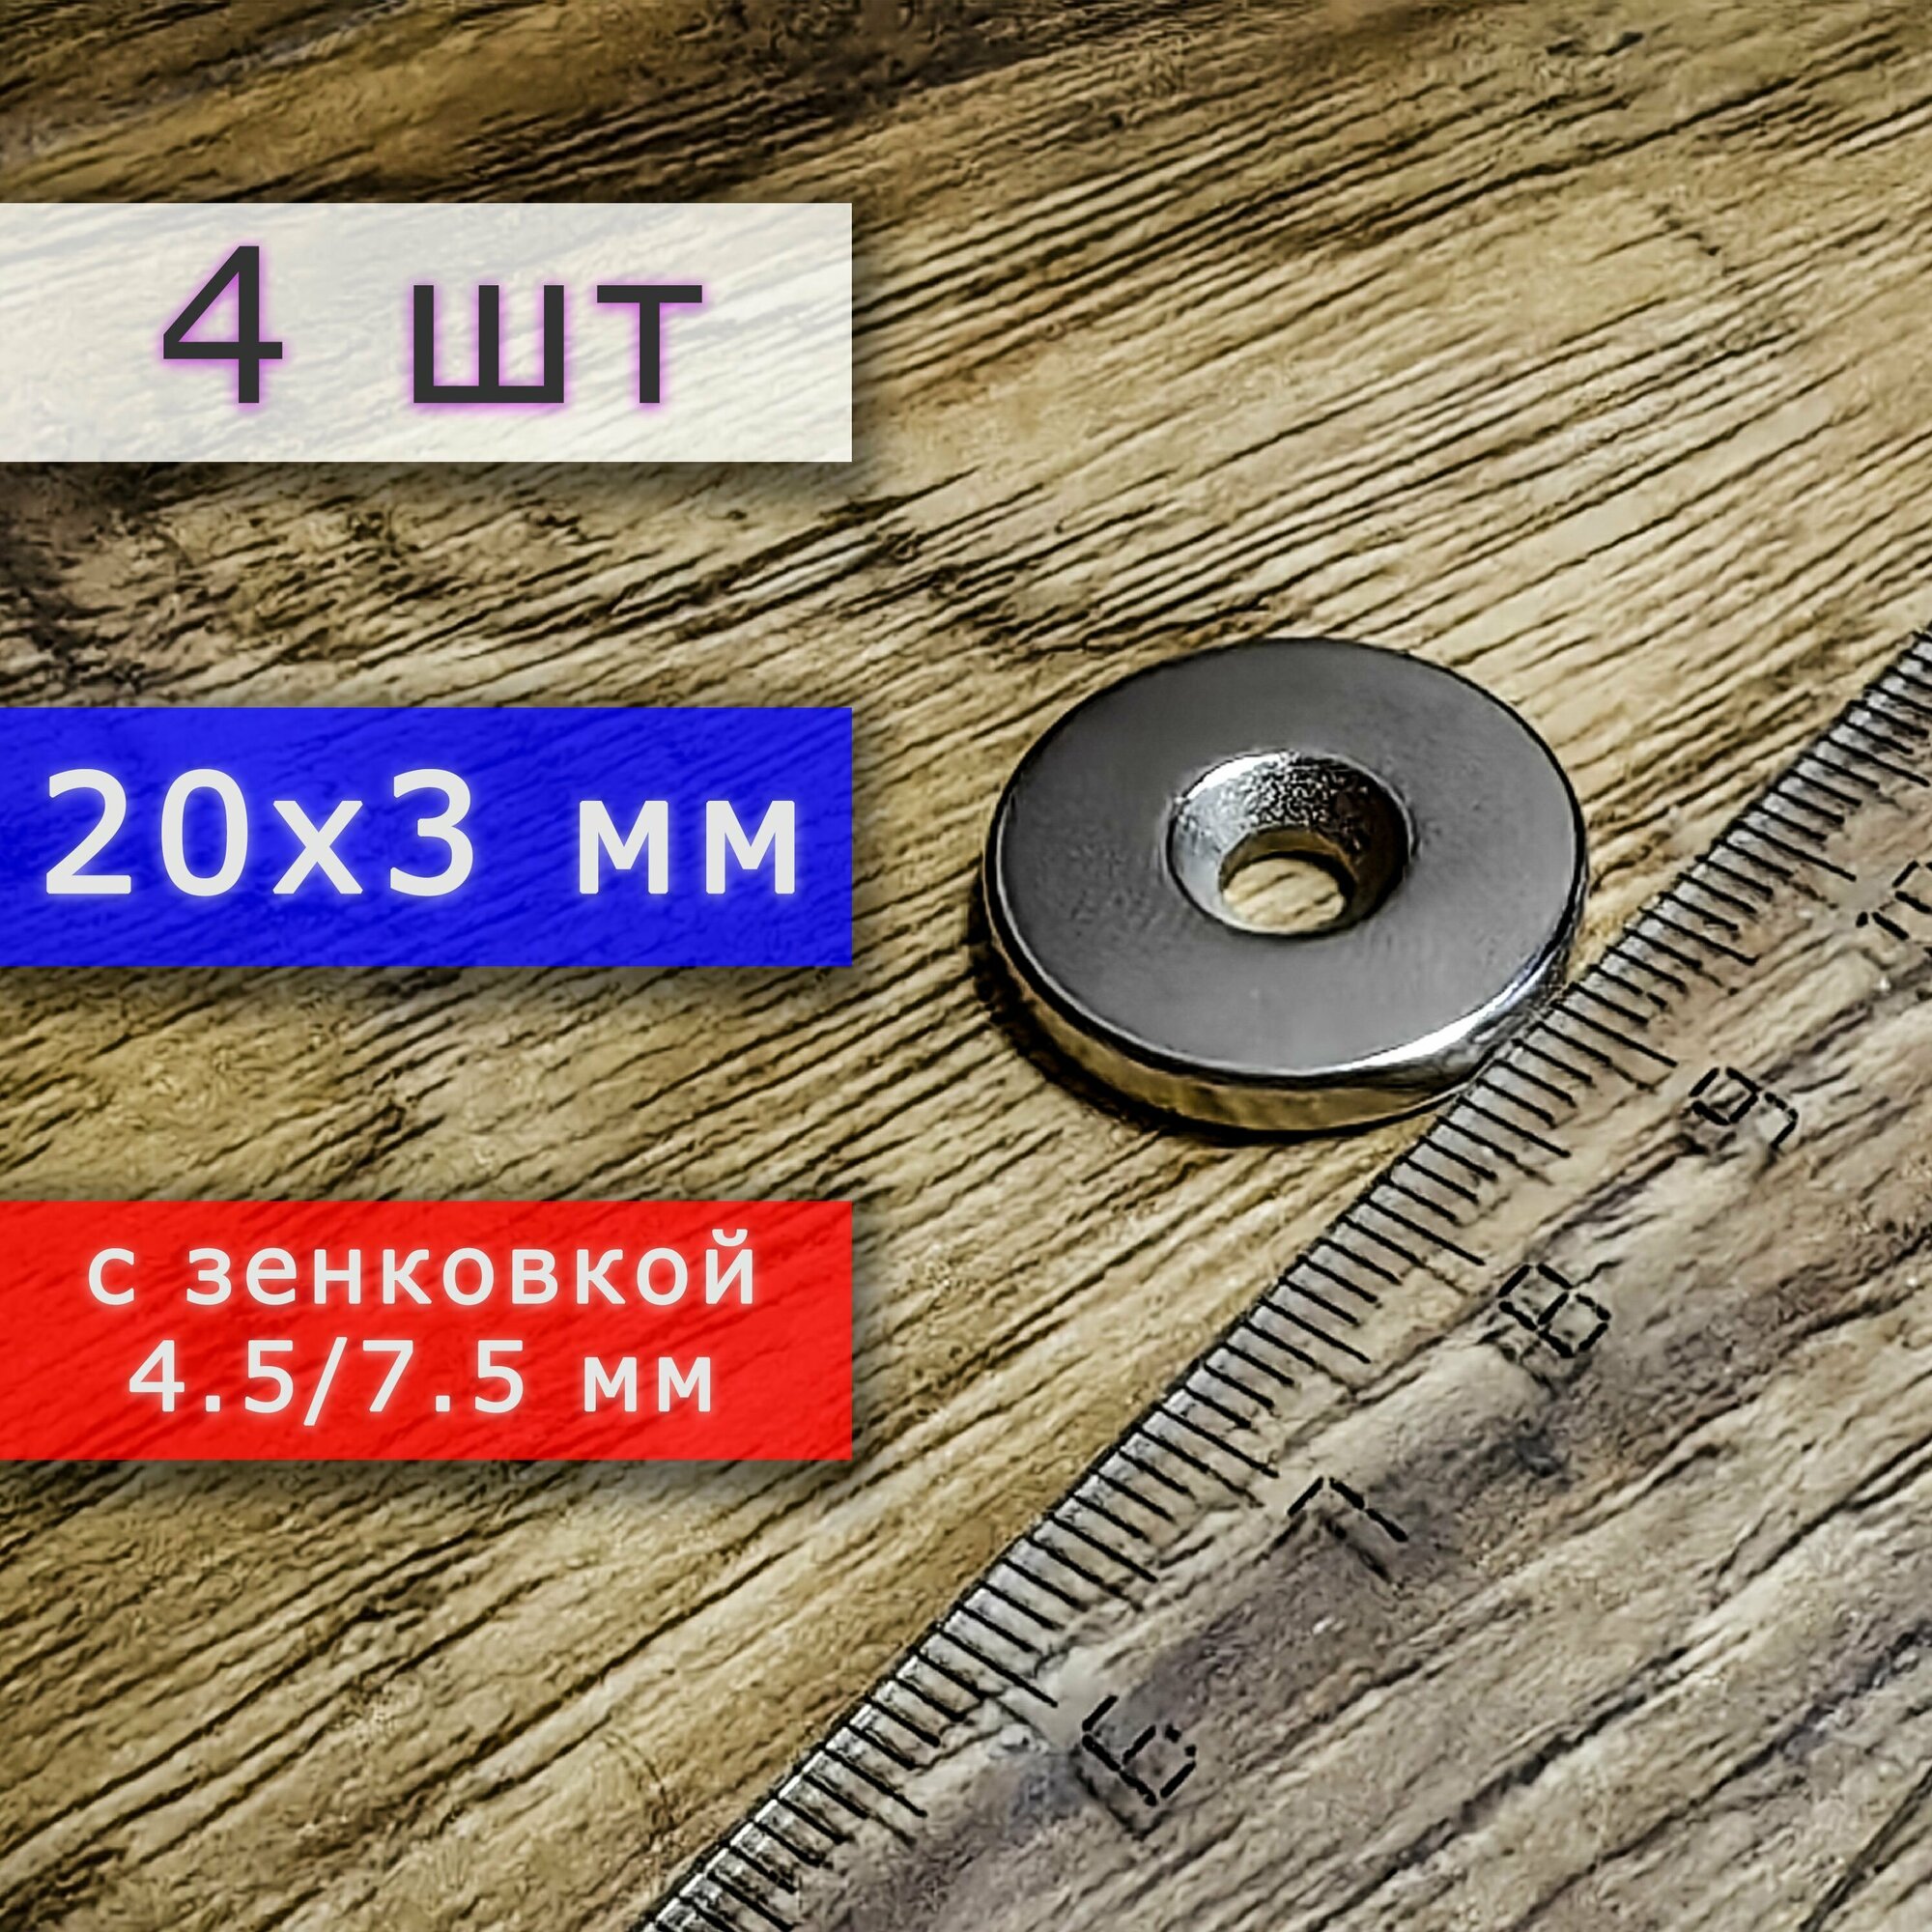 Неодимовый магнит (магнитный диск) 20х3 с отверстием (зенковкой) 4.5/7.5